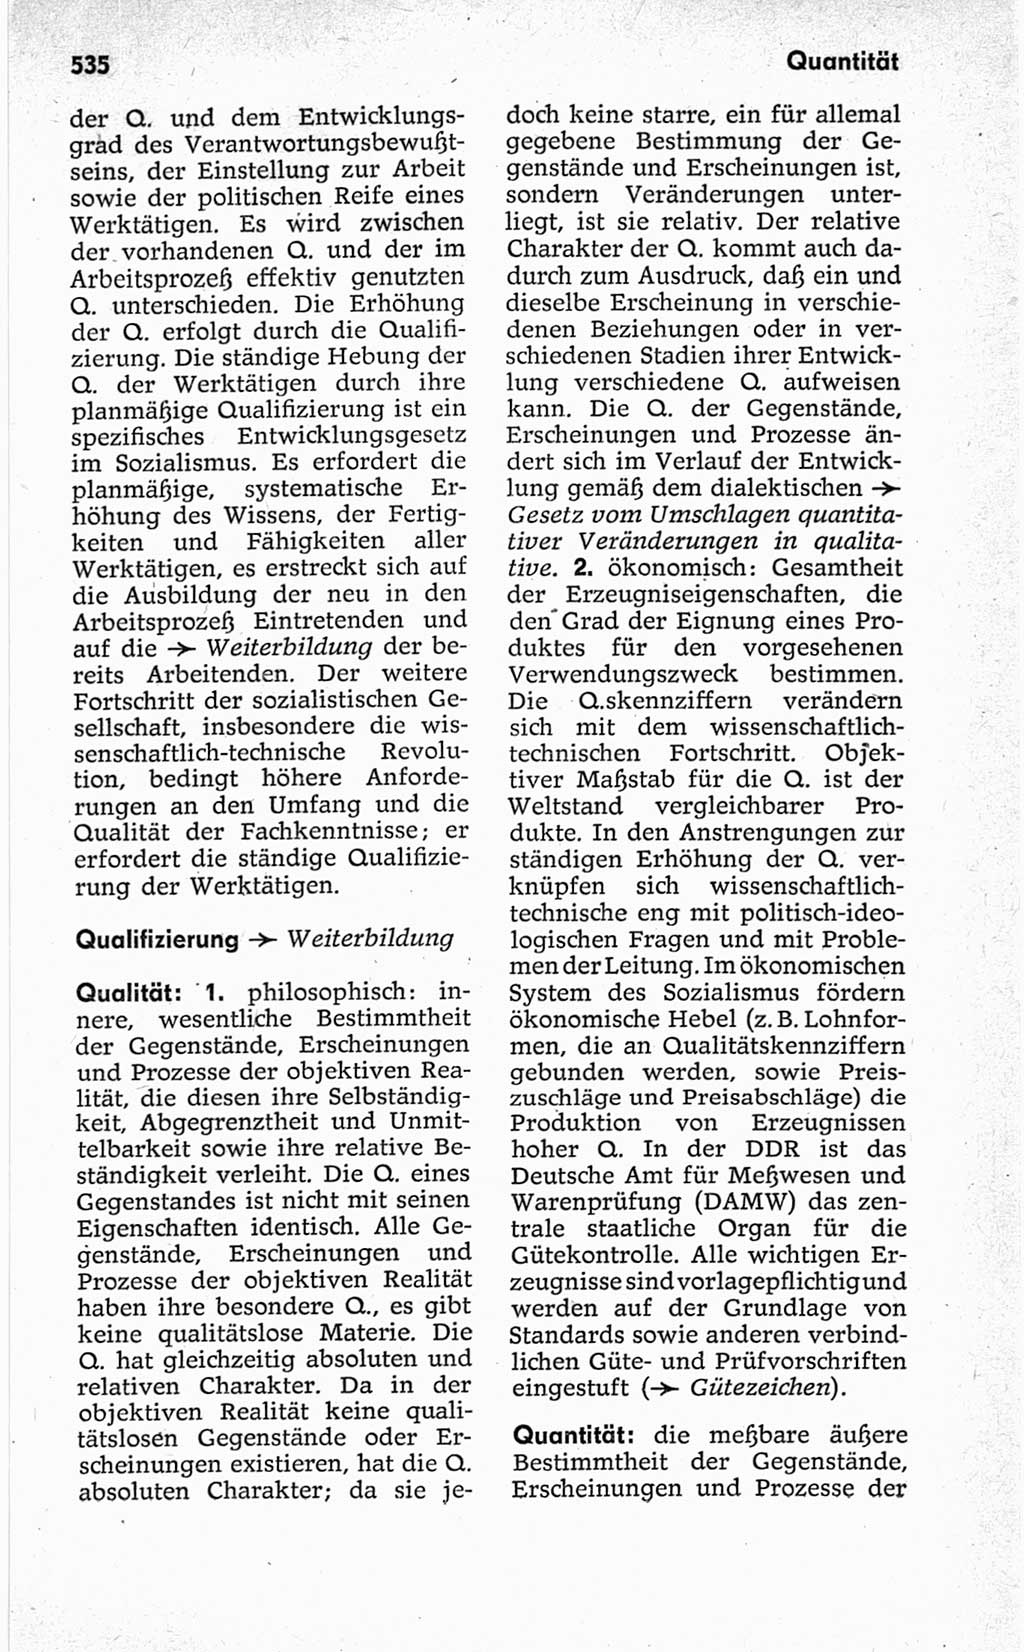 Kleines politisches Wörterbuch [Deutsche Demokratische Republik (DDR)] 1967, Seite 535 (Kl. pol. Wb. DDR 1967, S. 535)